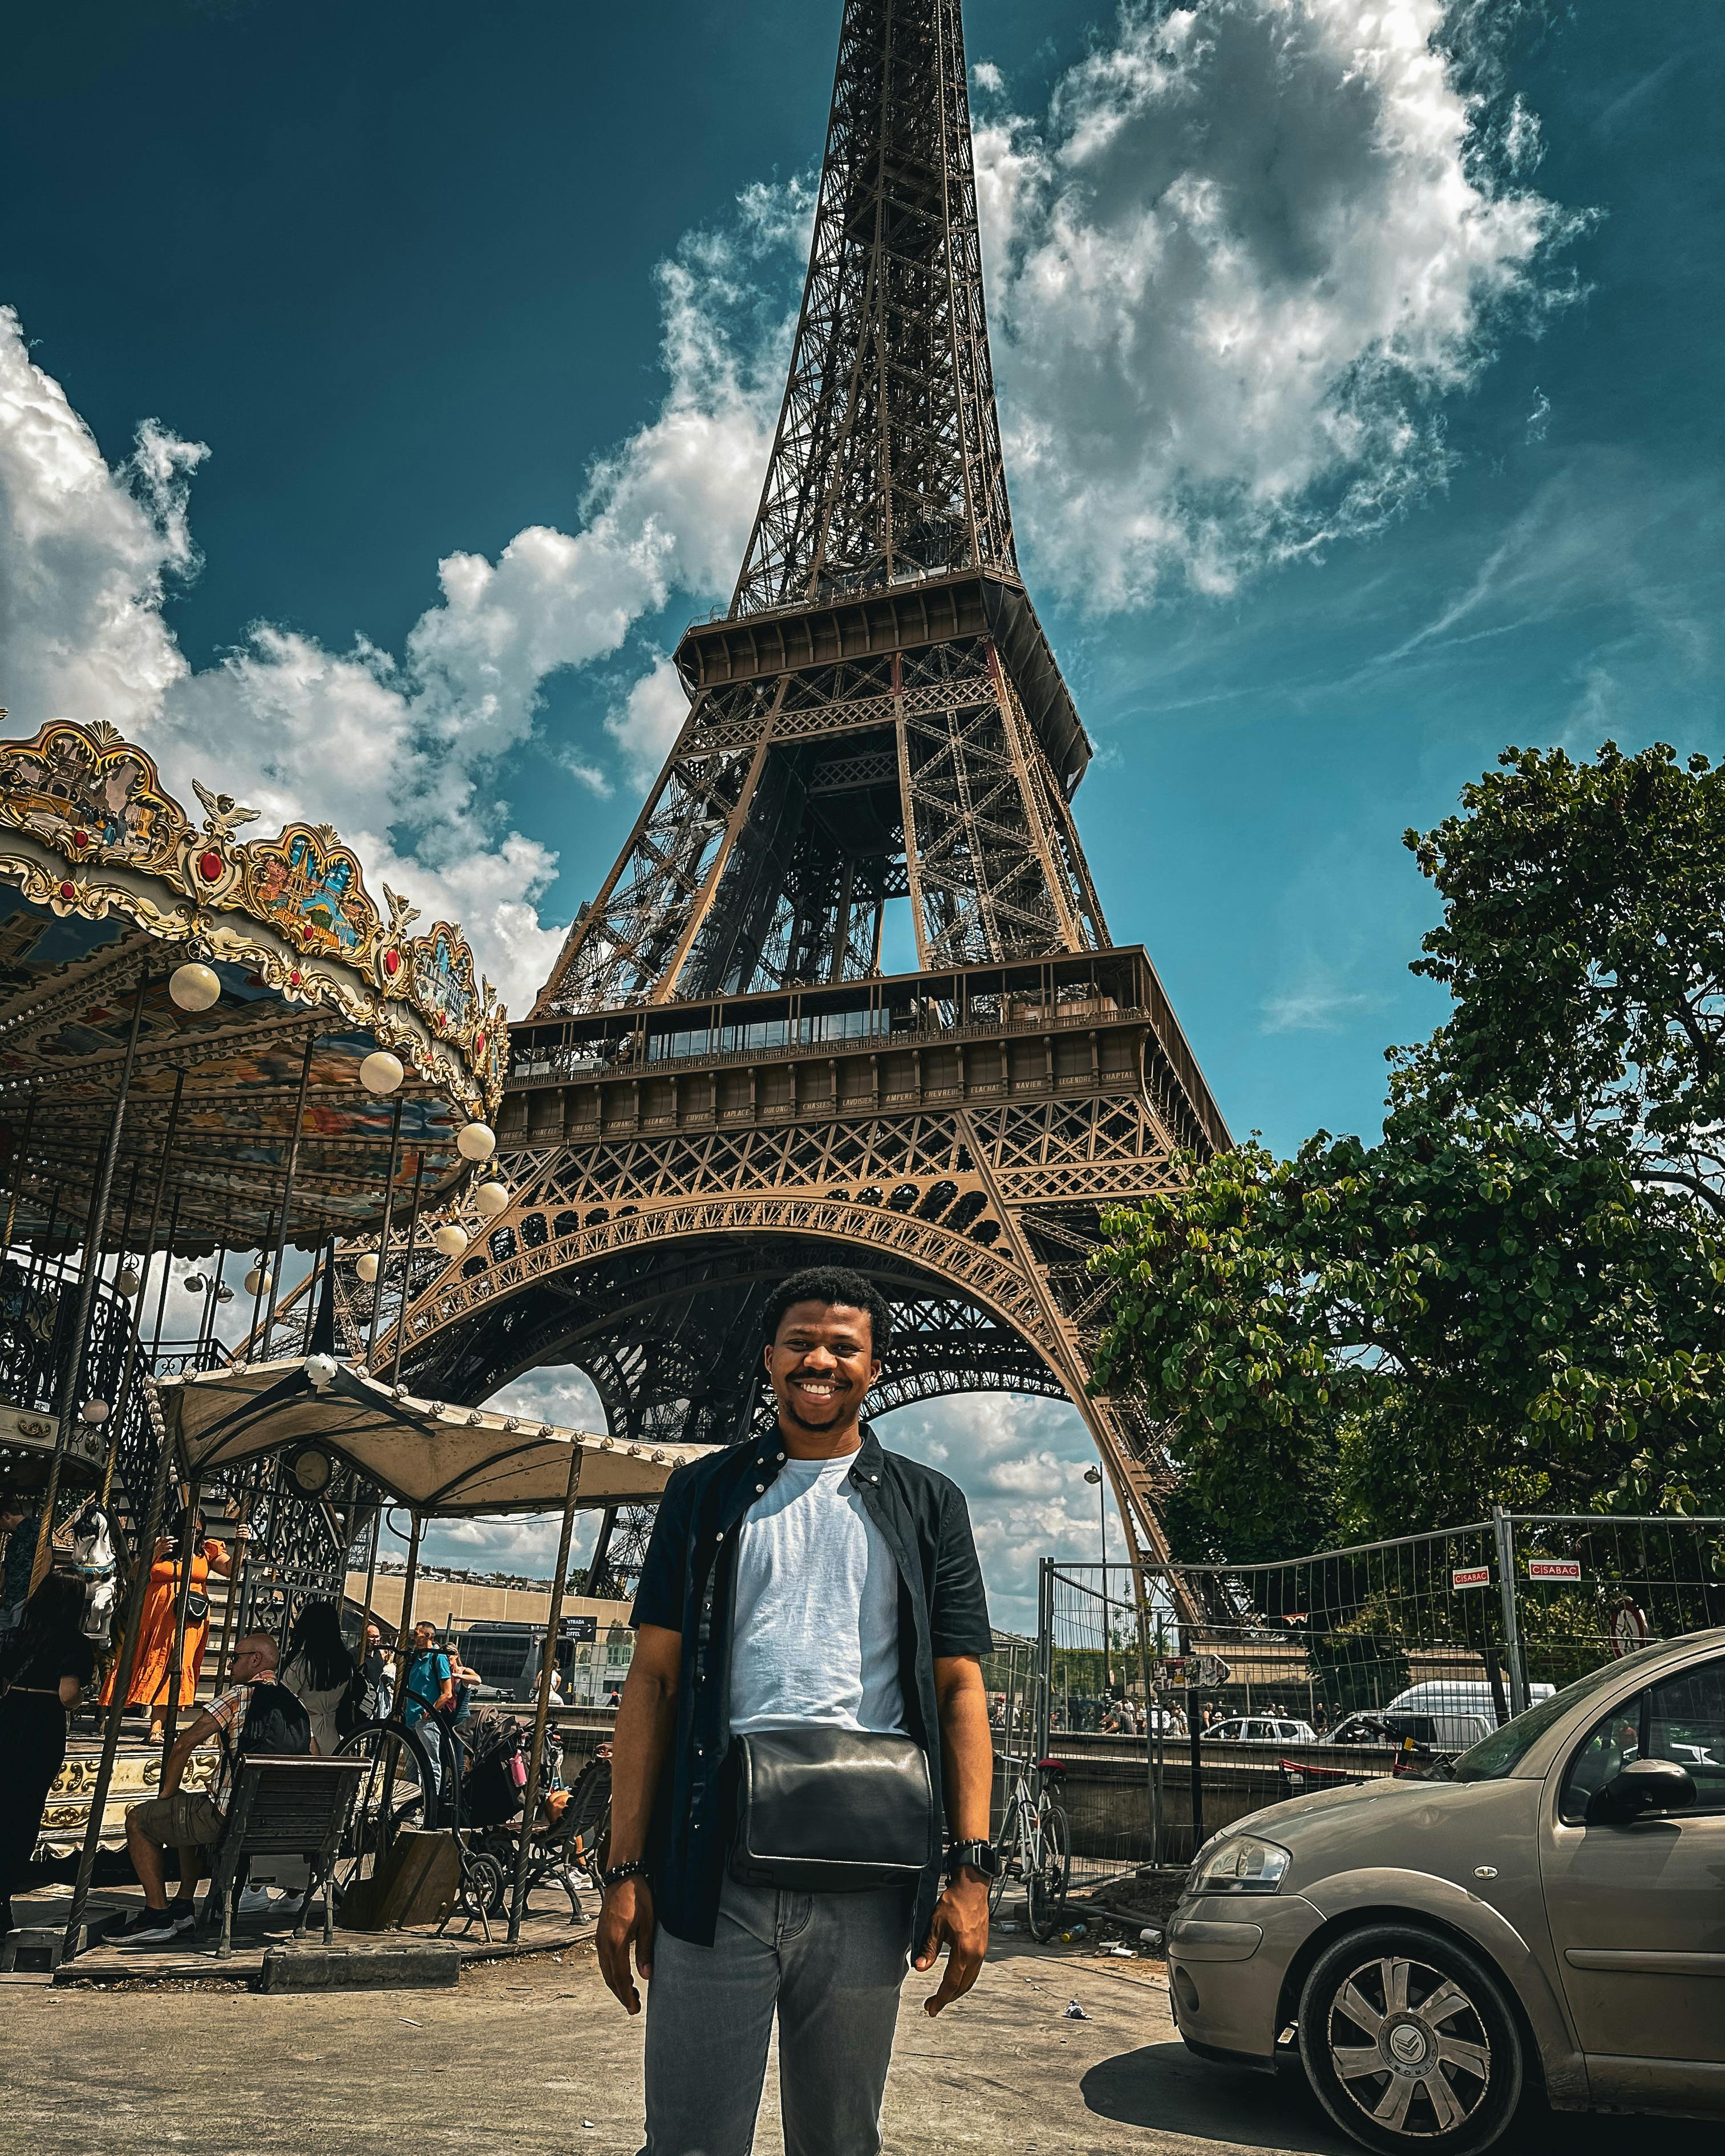 Bir-Hakeim Bridge & Eiffel Tower, Paris | Photographer | Flytographer